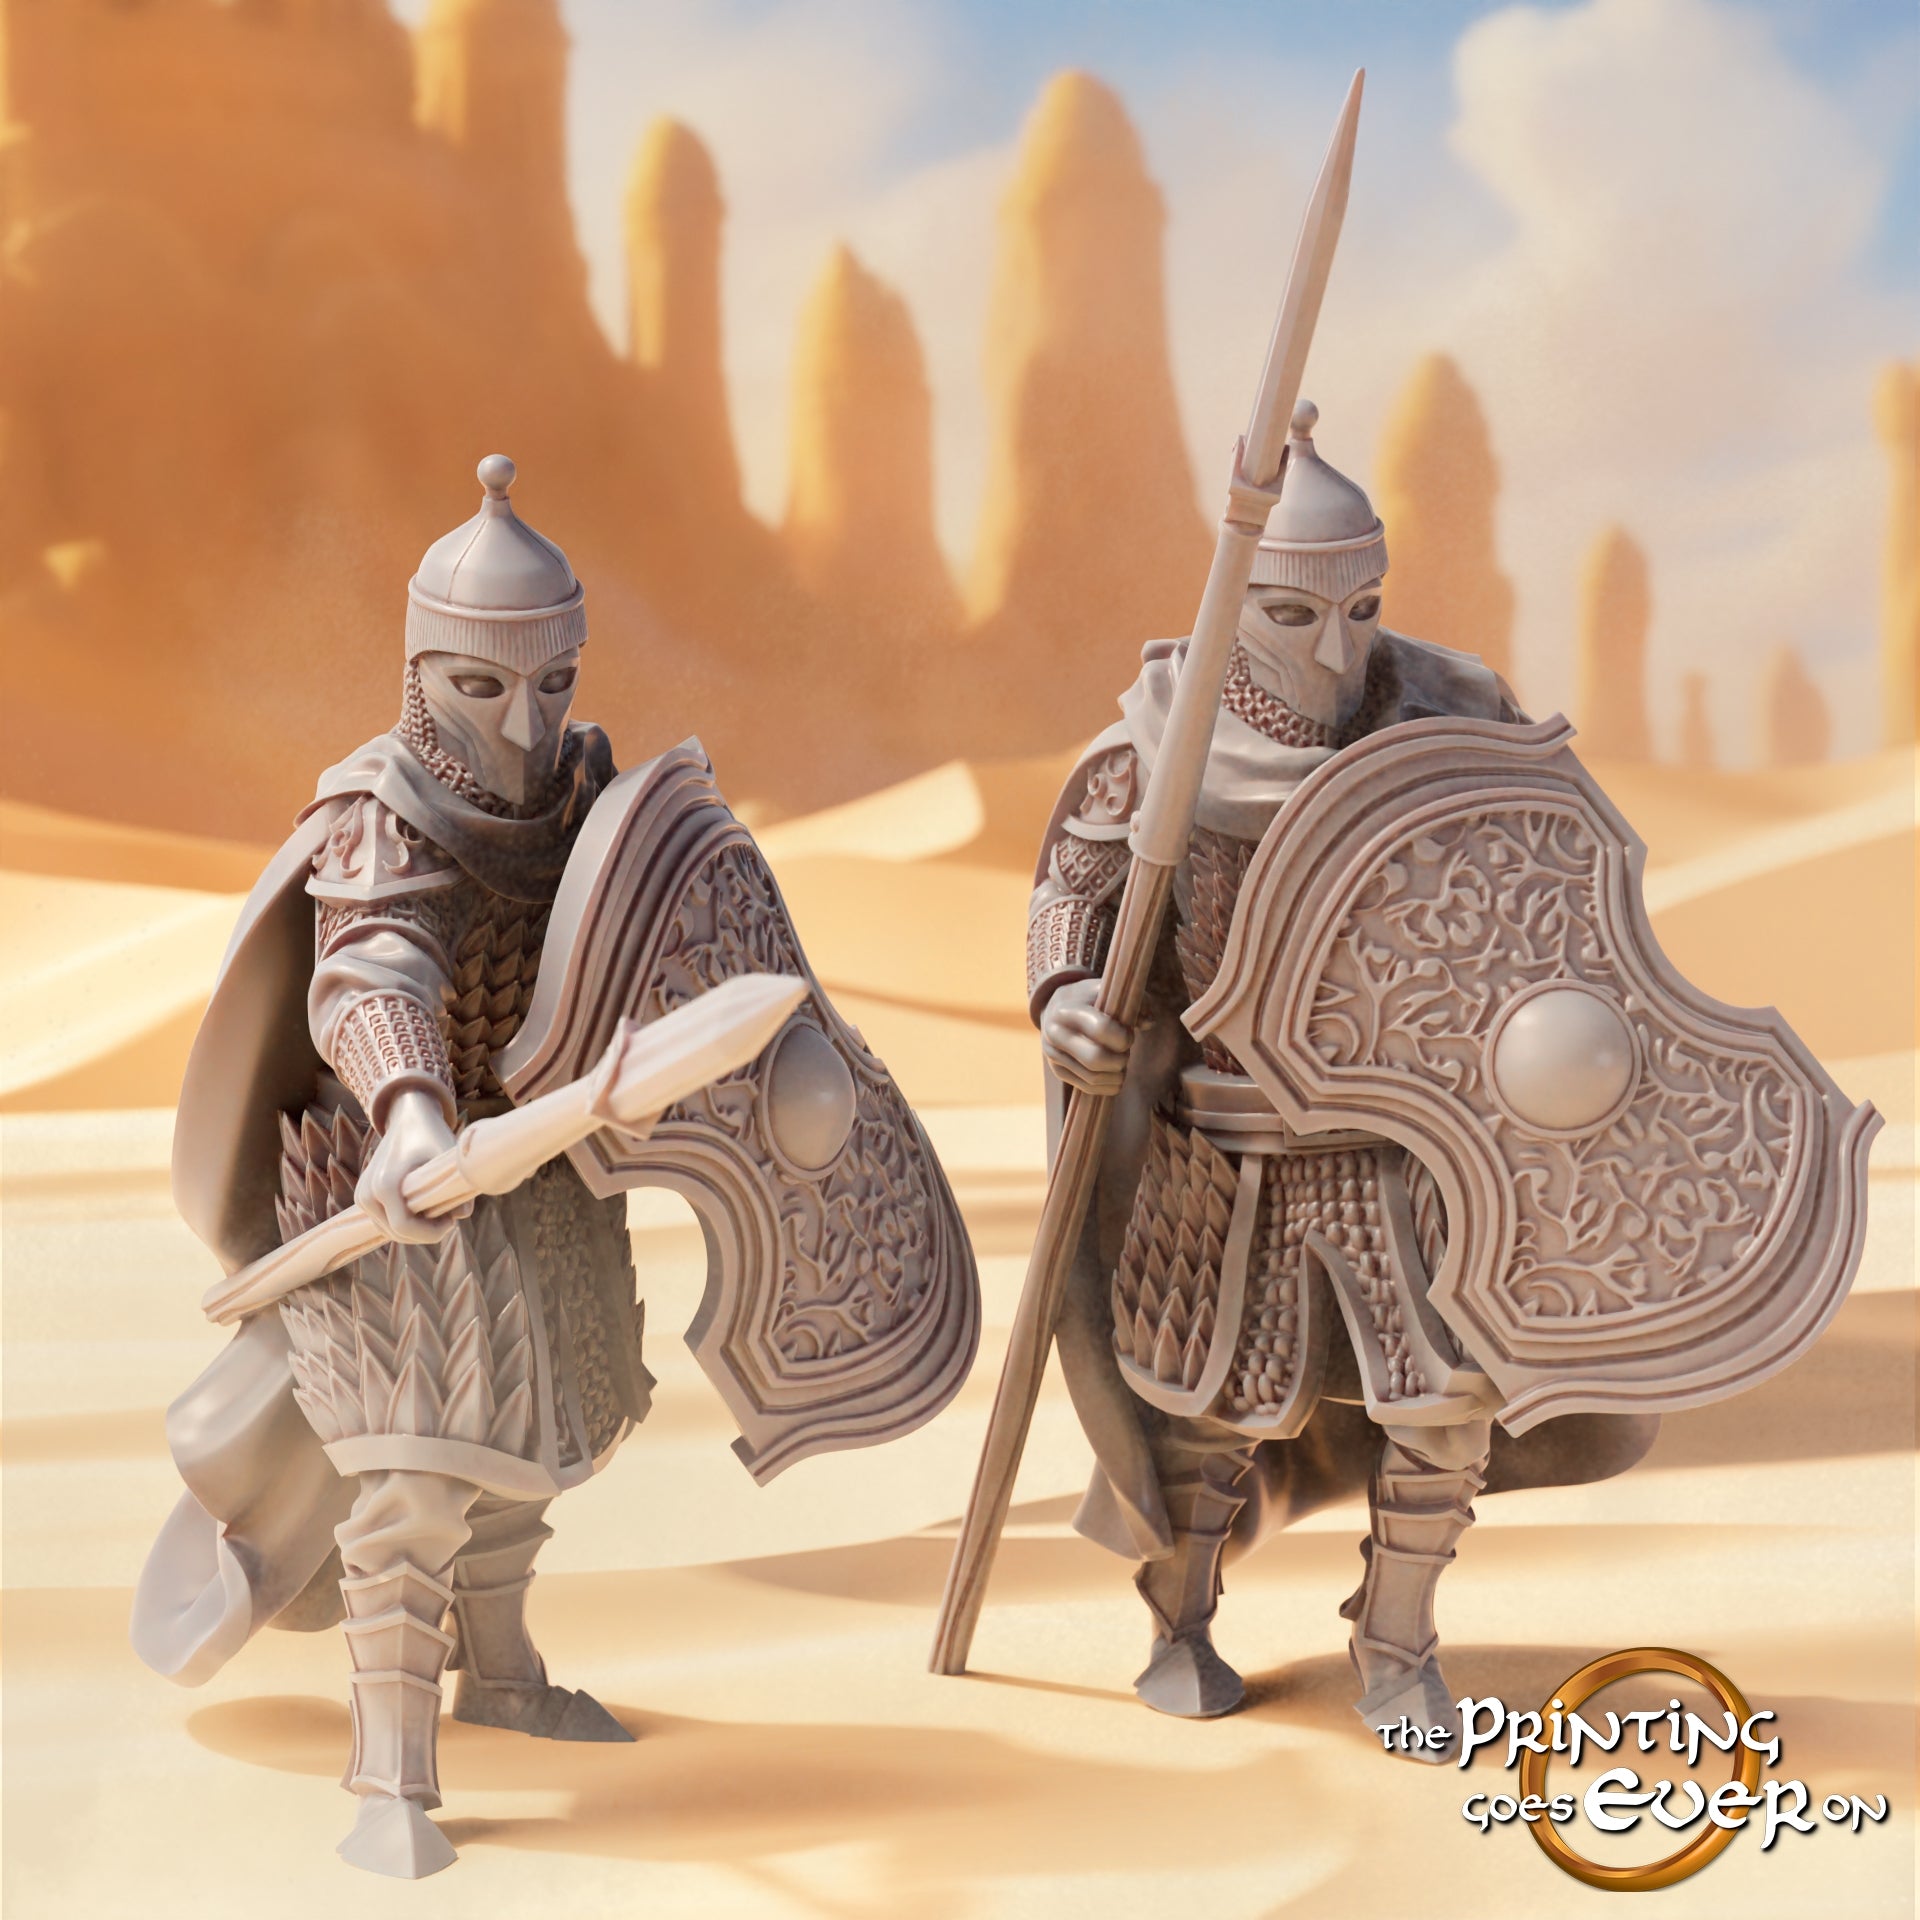 Produktfoto Tabletop 28mm The Printing Goes Ever On (TPGEO)  0: Krieger des Ostens 2: Wüstenmenschen mit Bogen, Speer und Schwert - Orientalische Nomaden der Wüste